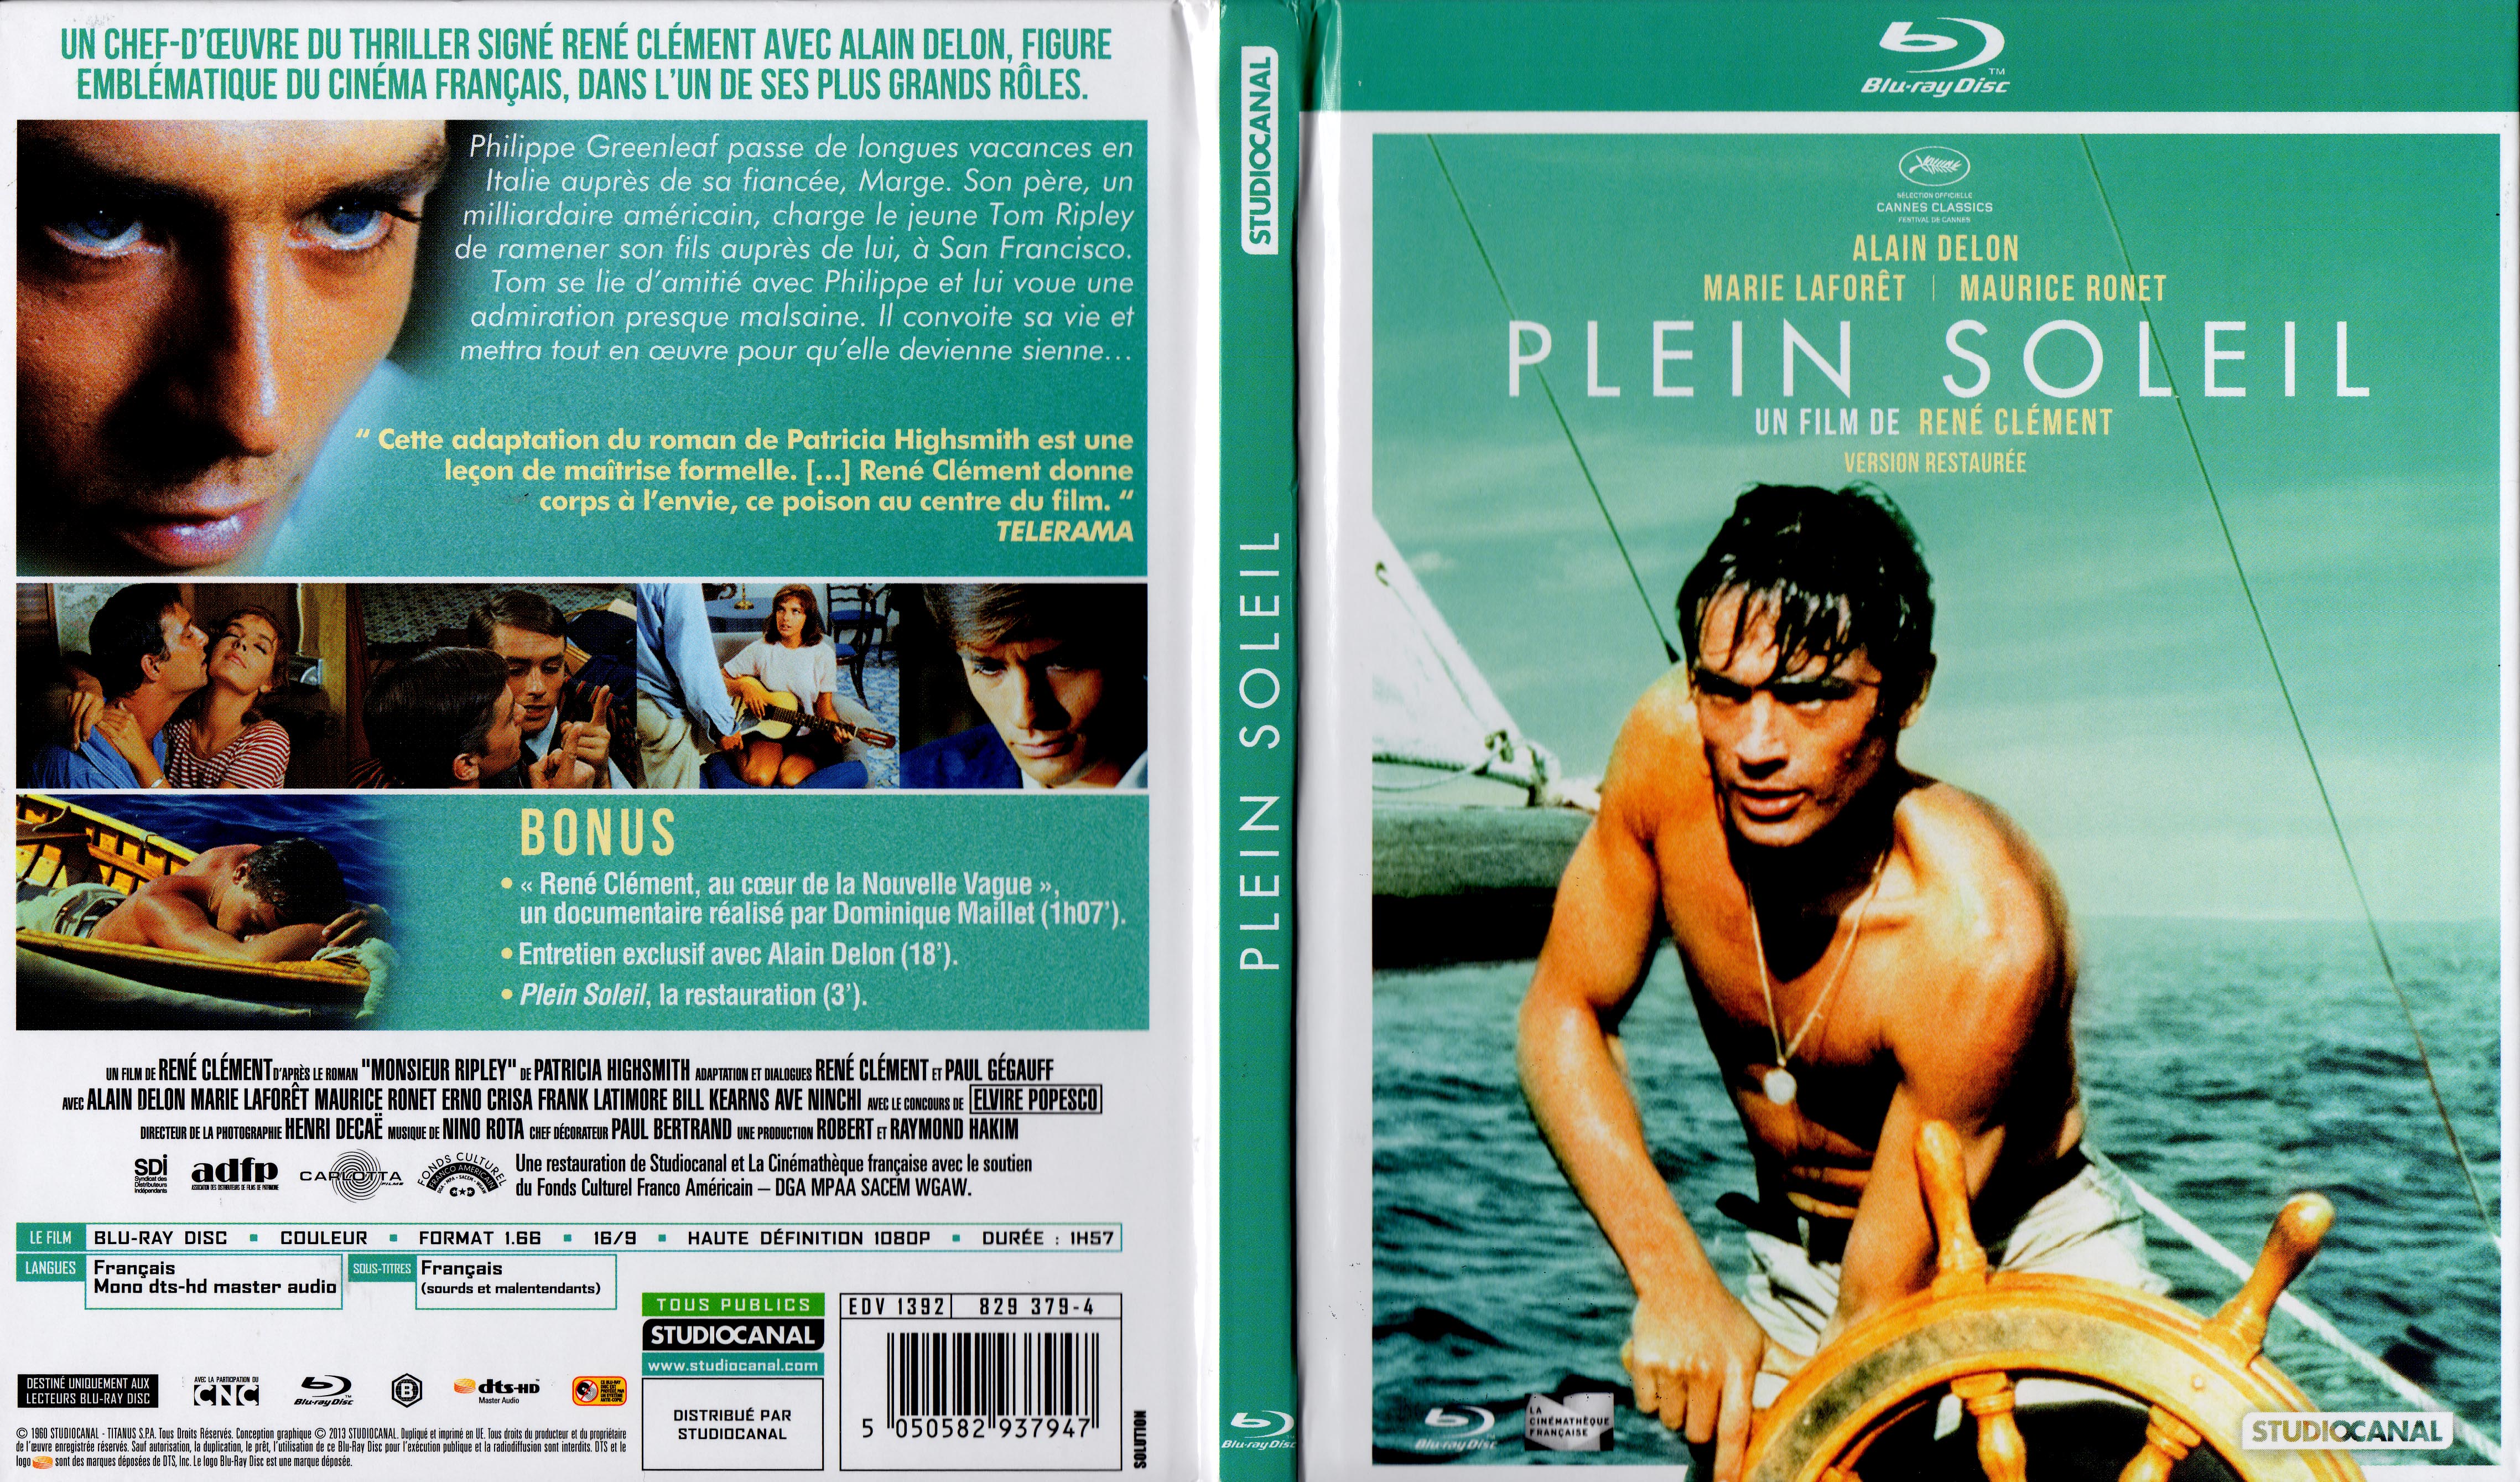 Jaquette DVD Plein soleil (BLU-RAY)